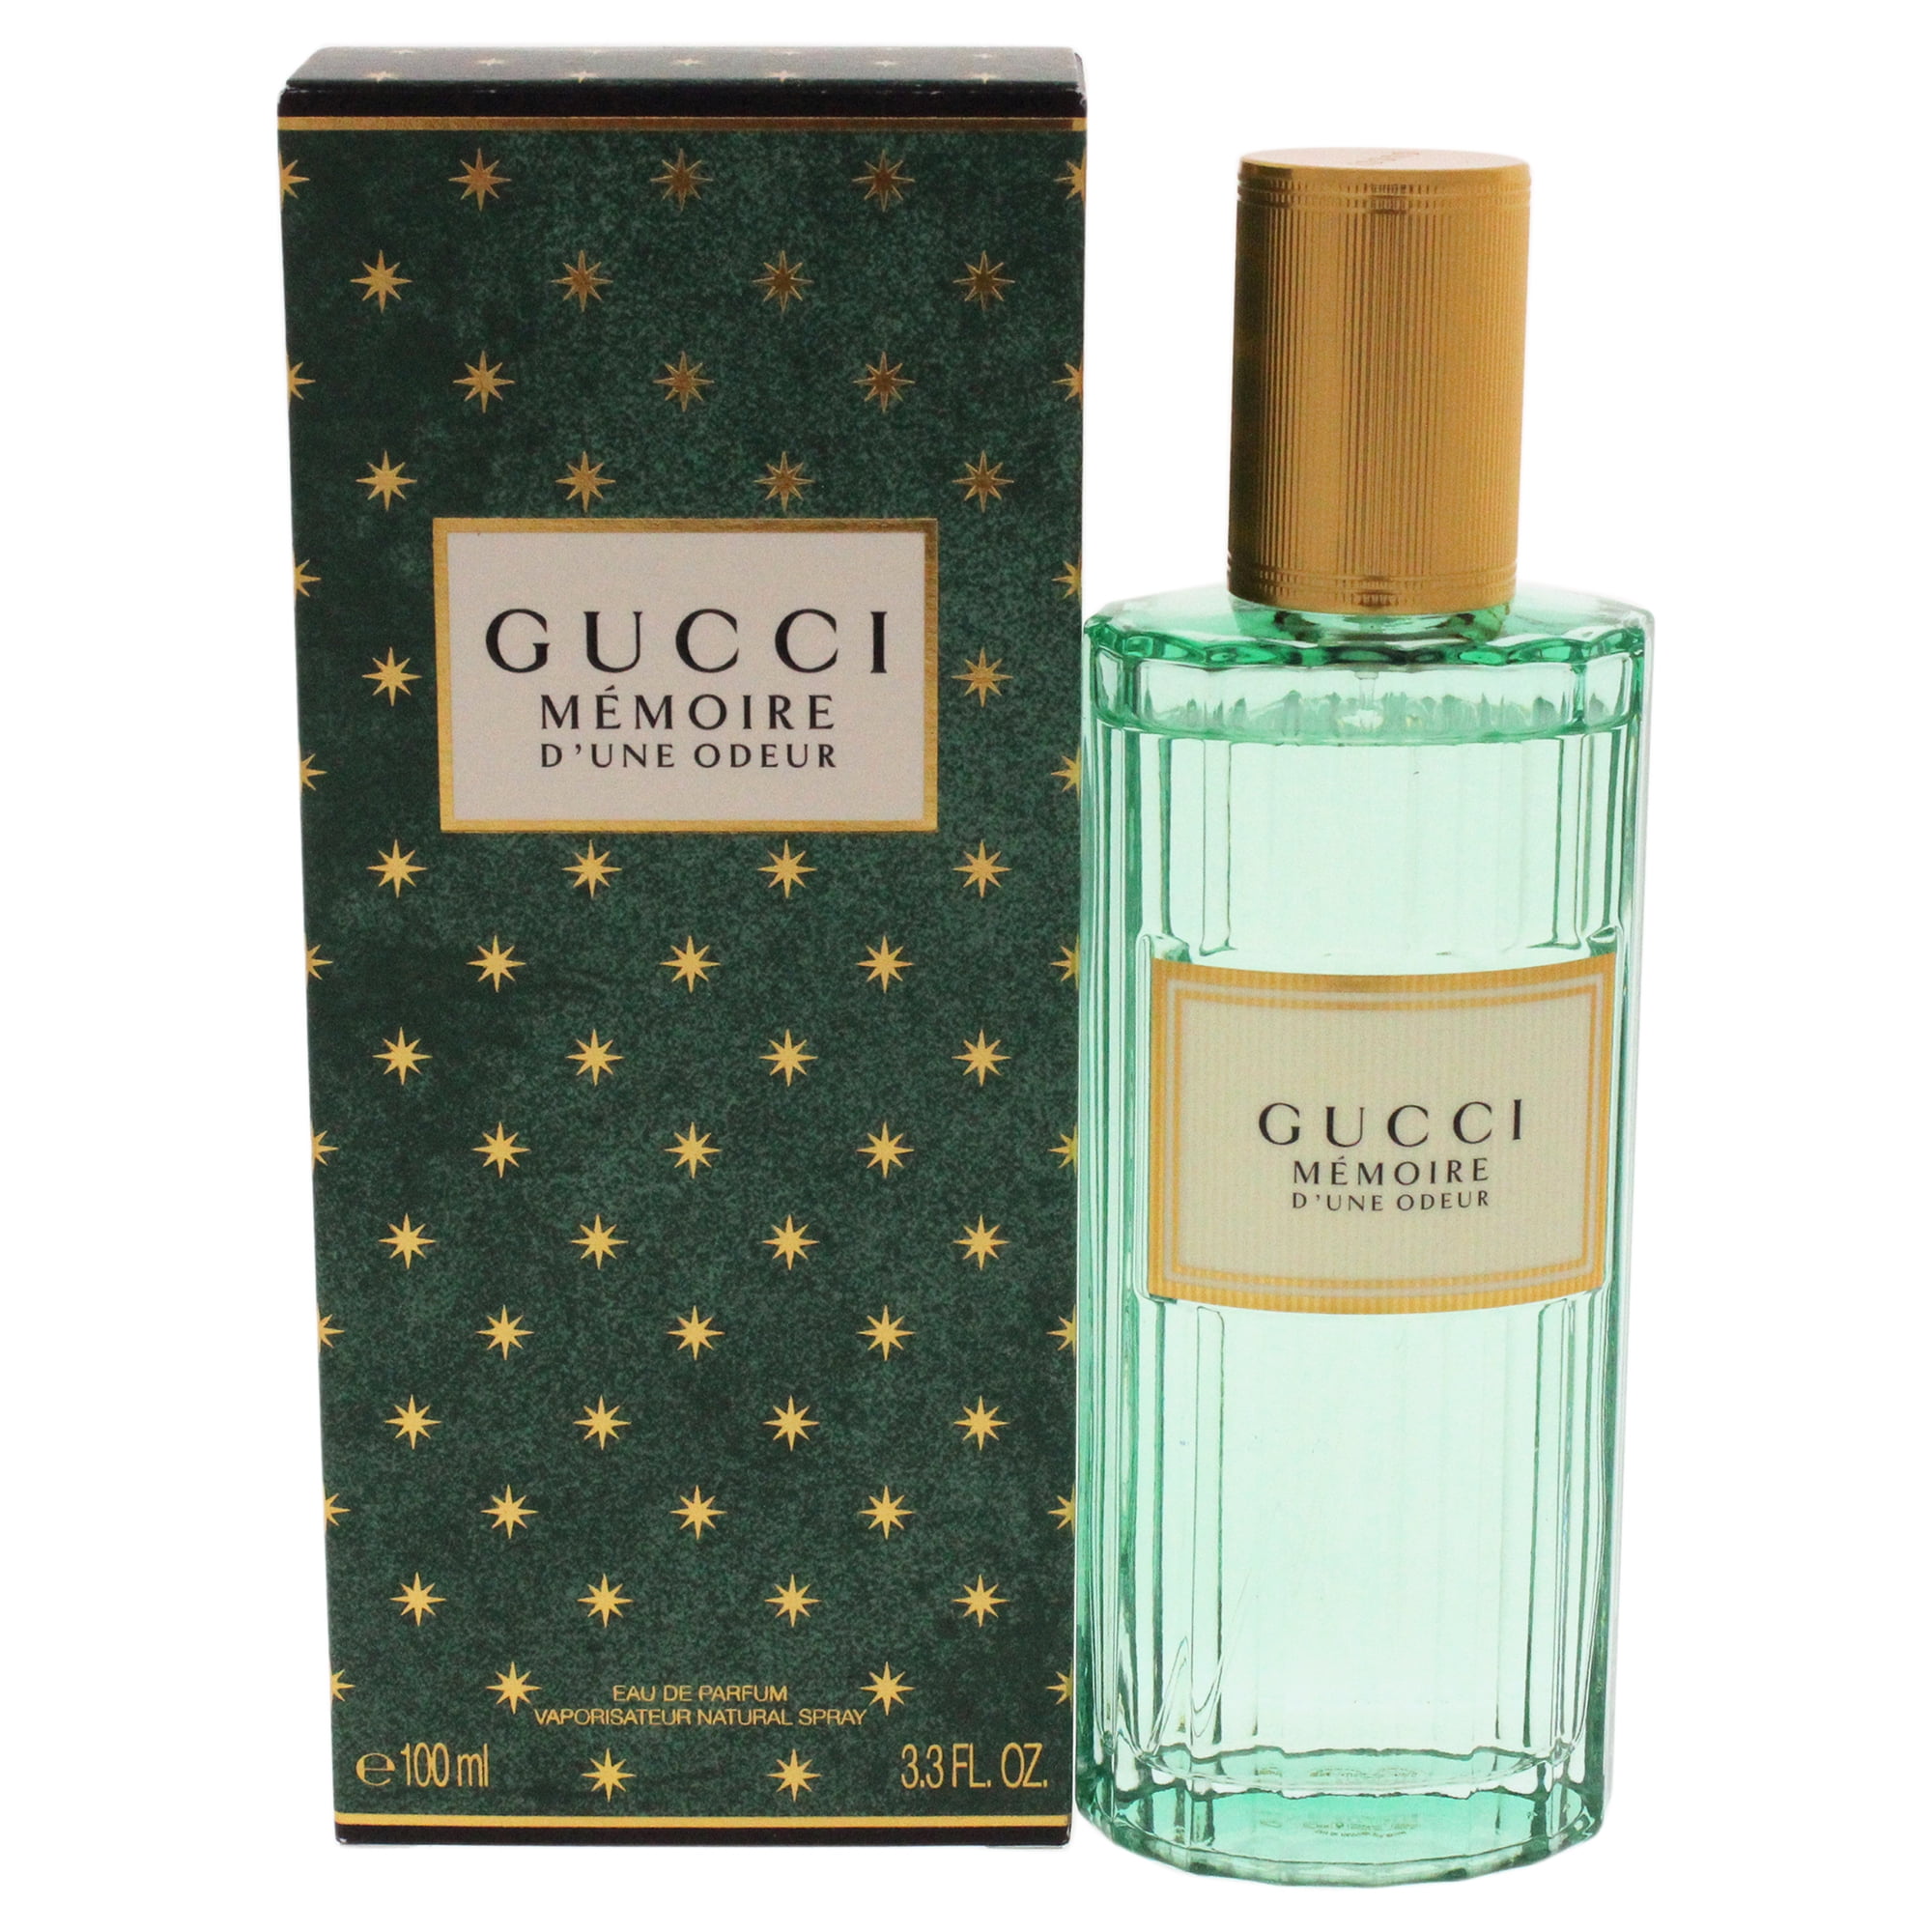 gucci new fragrance memoire